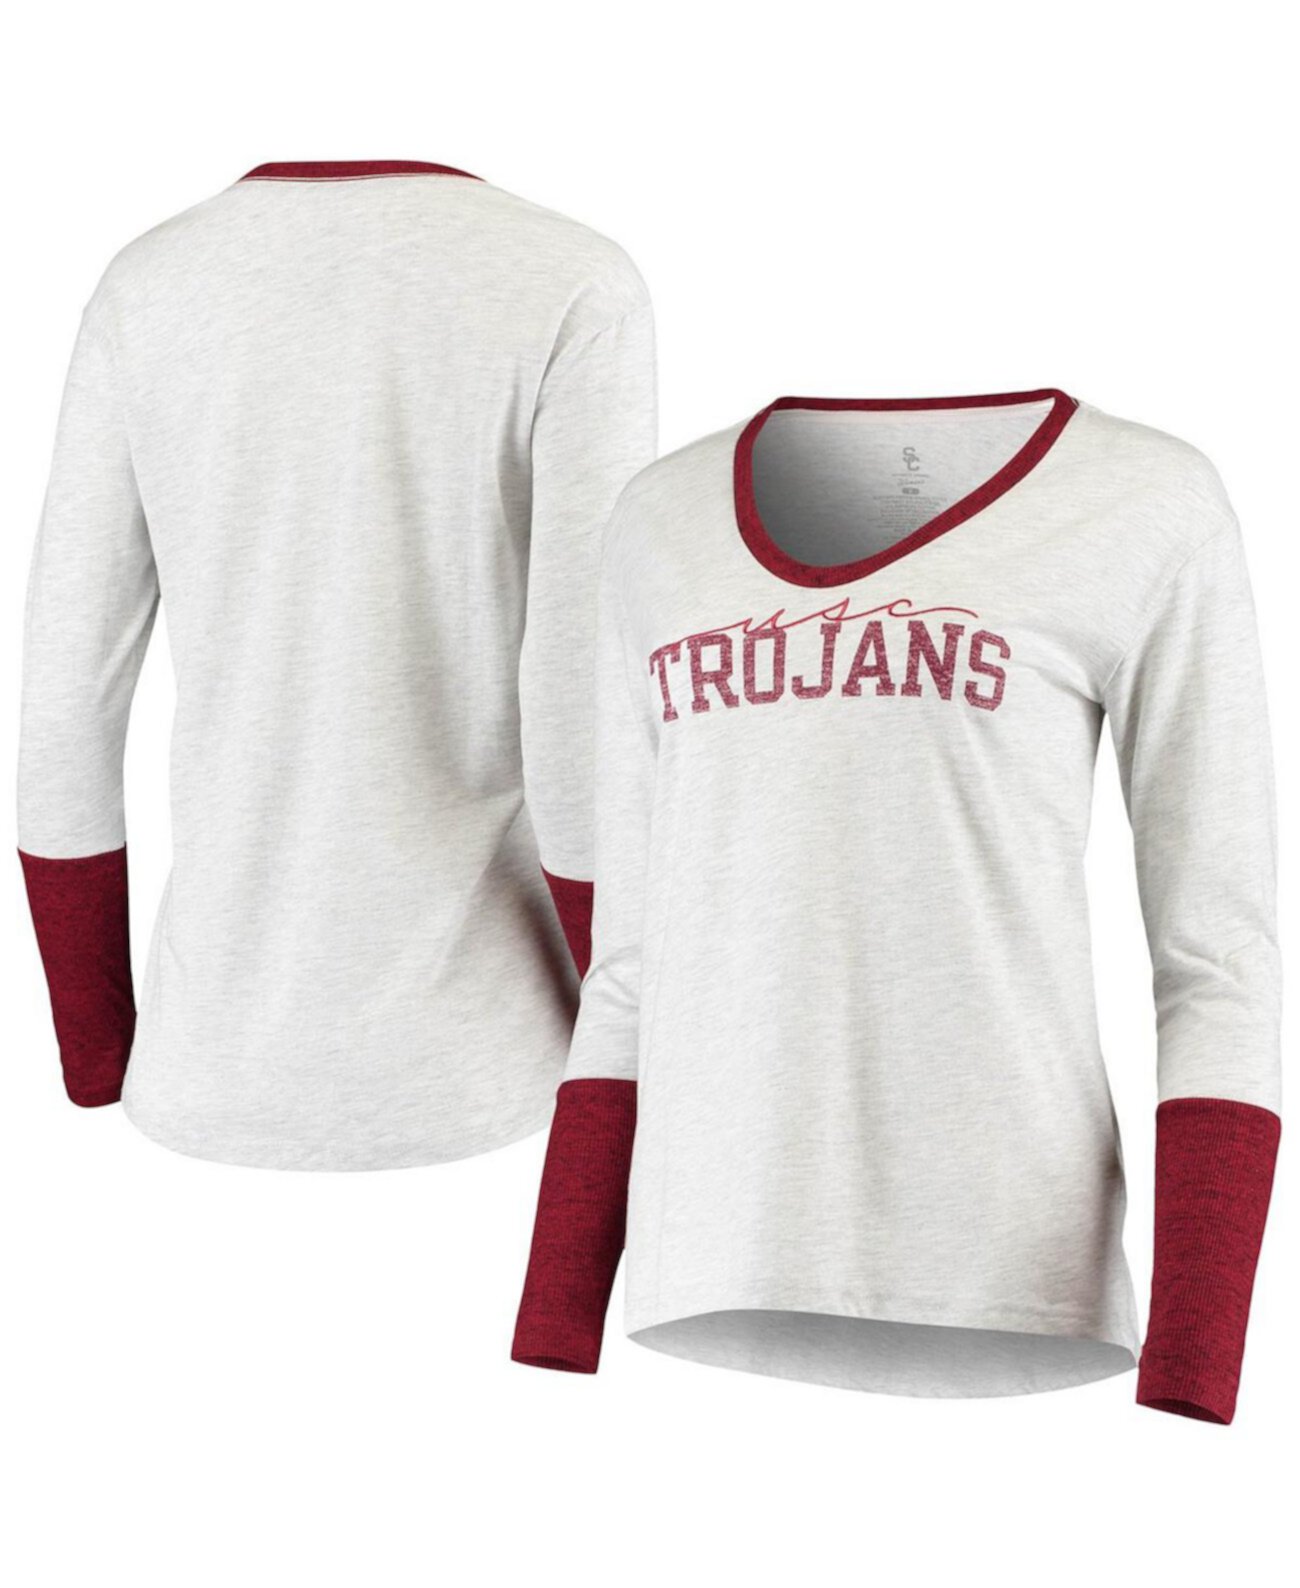 Женская футболка с длинным рукавом USC Trojans Eleanor Scoop Neck цвета меланжевого серого цвета 289c Apparel